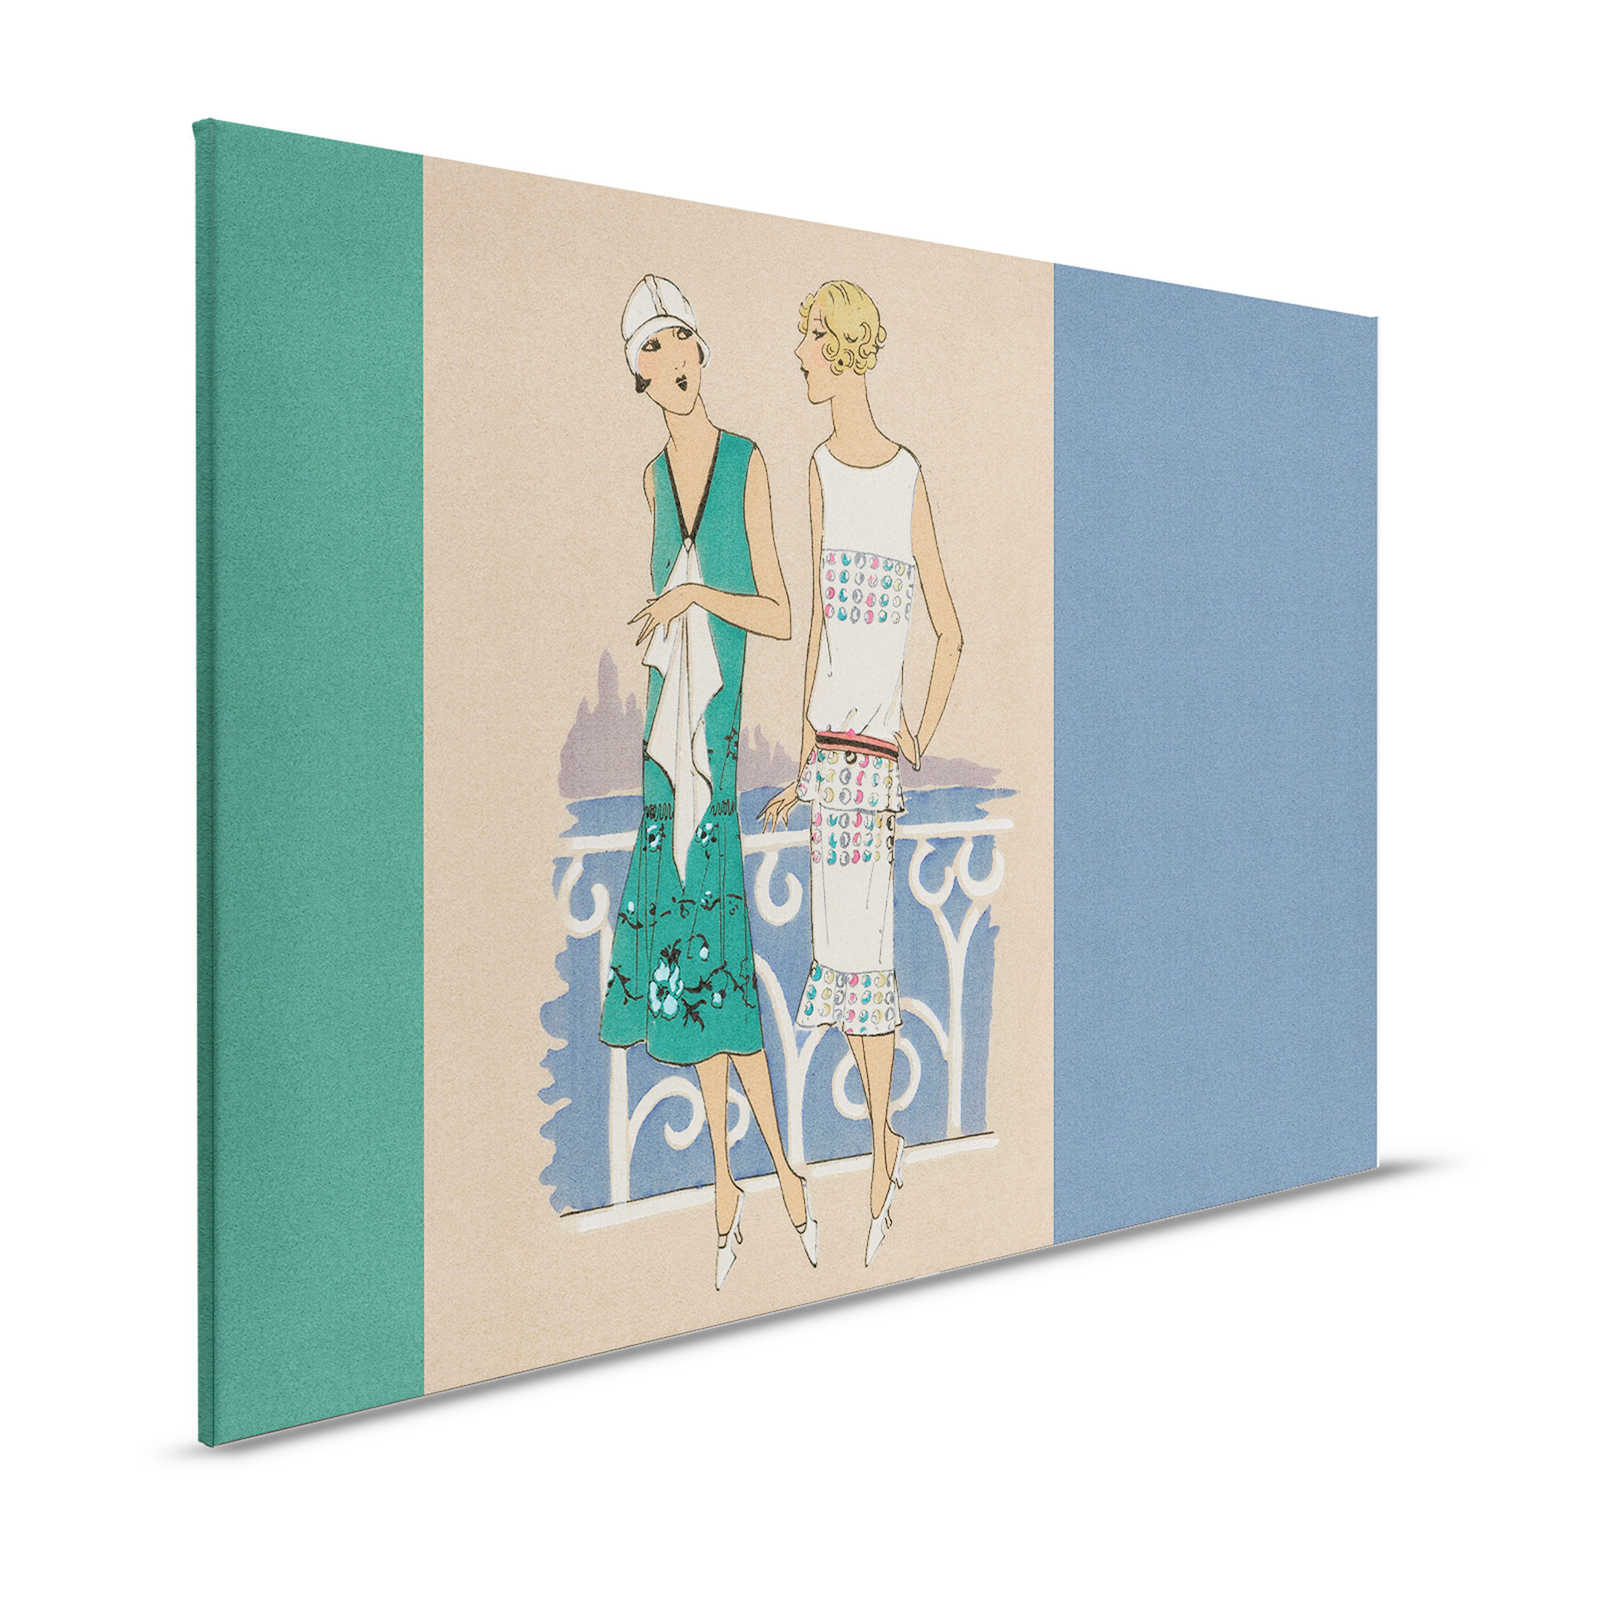 Parisienne 3 - toile rétro mode impression années 20 en bleu & vert - 1,20 m x 0,80 m
